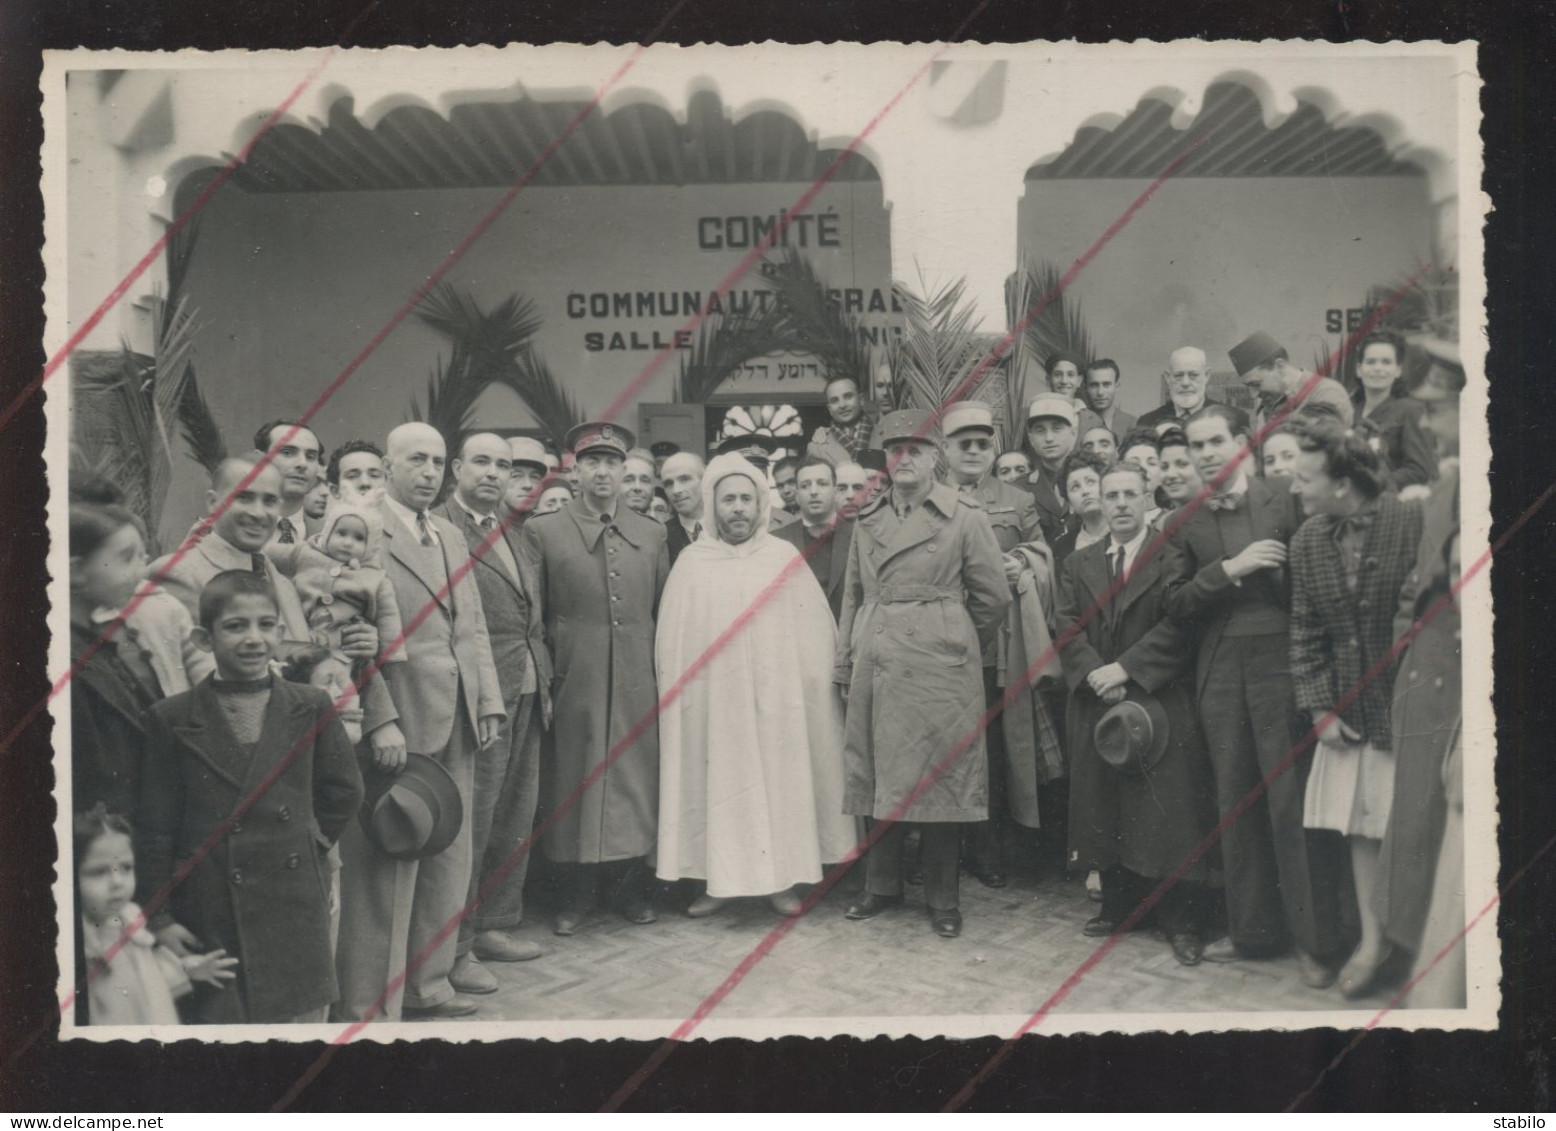 MAROC - FES - JUDAISME - VISITE DES AUTORITES FRANCAISES ET MAROCAINES A LA COMMUNAUTE ISRAELITE - 1944 - FT 17.5 X 12 C - Orte